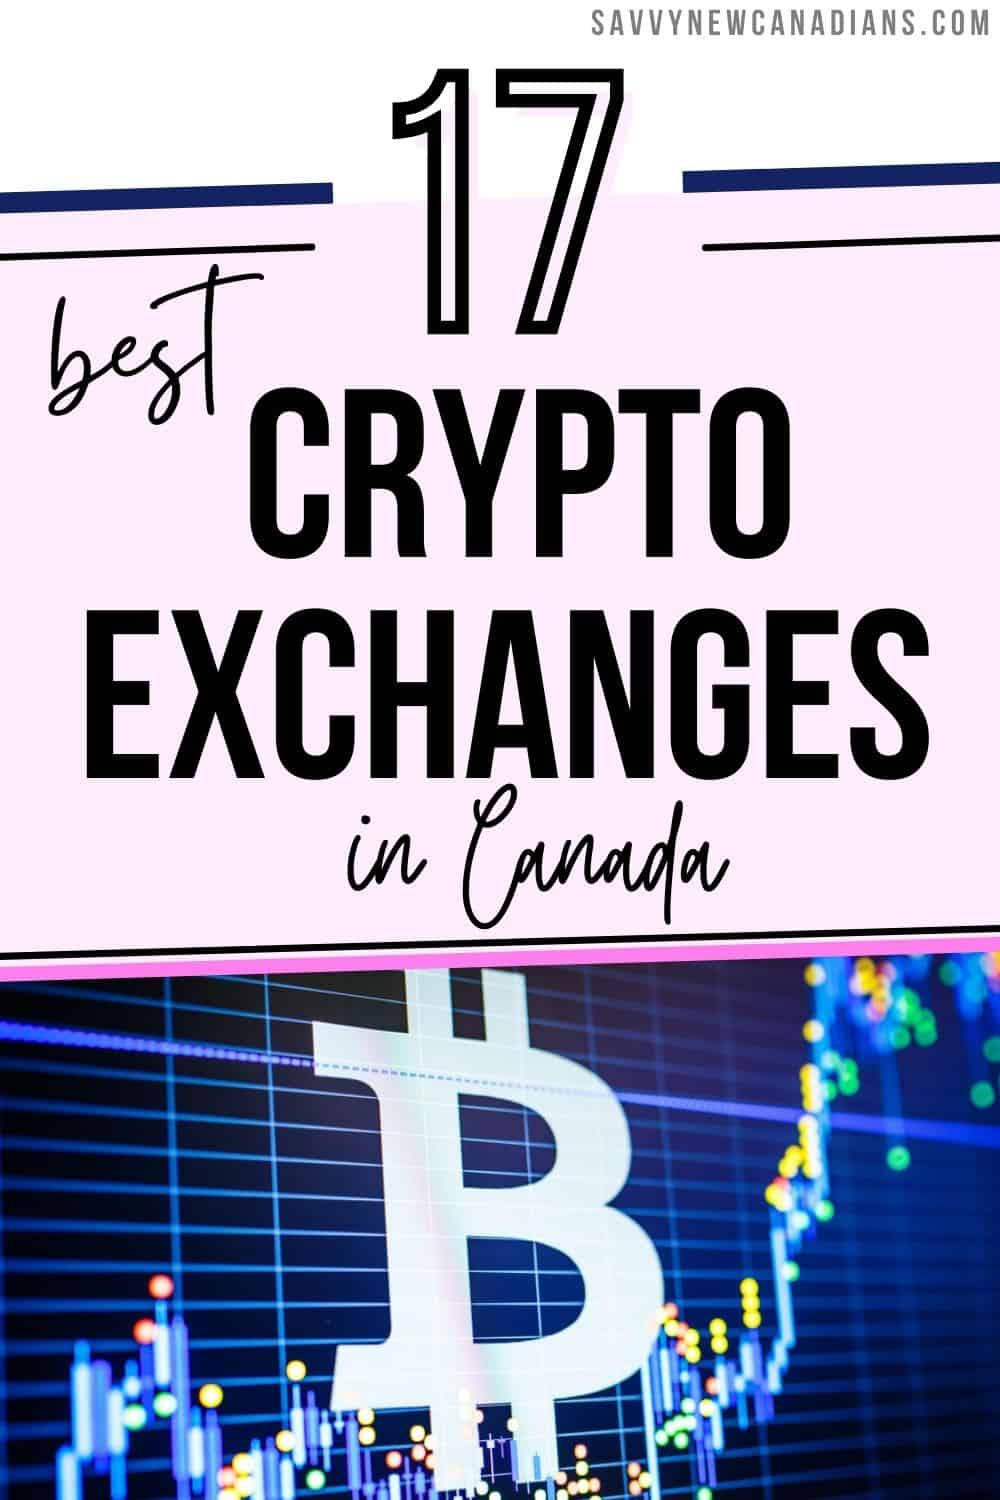 safest crypto exchange canada